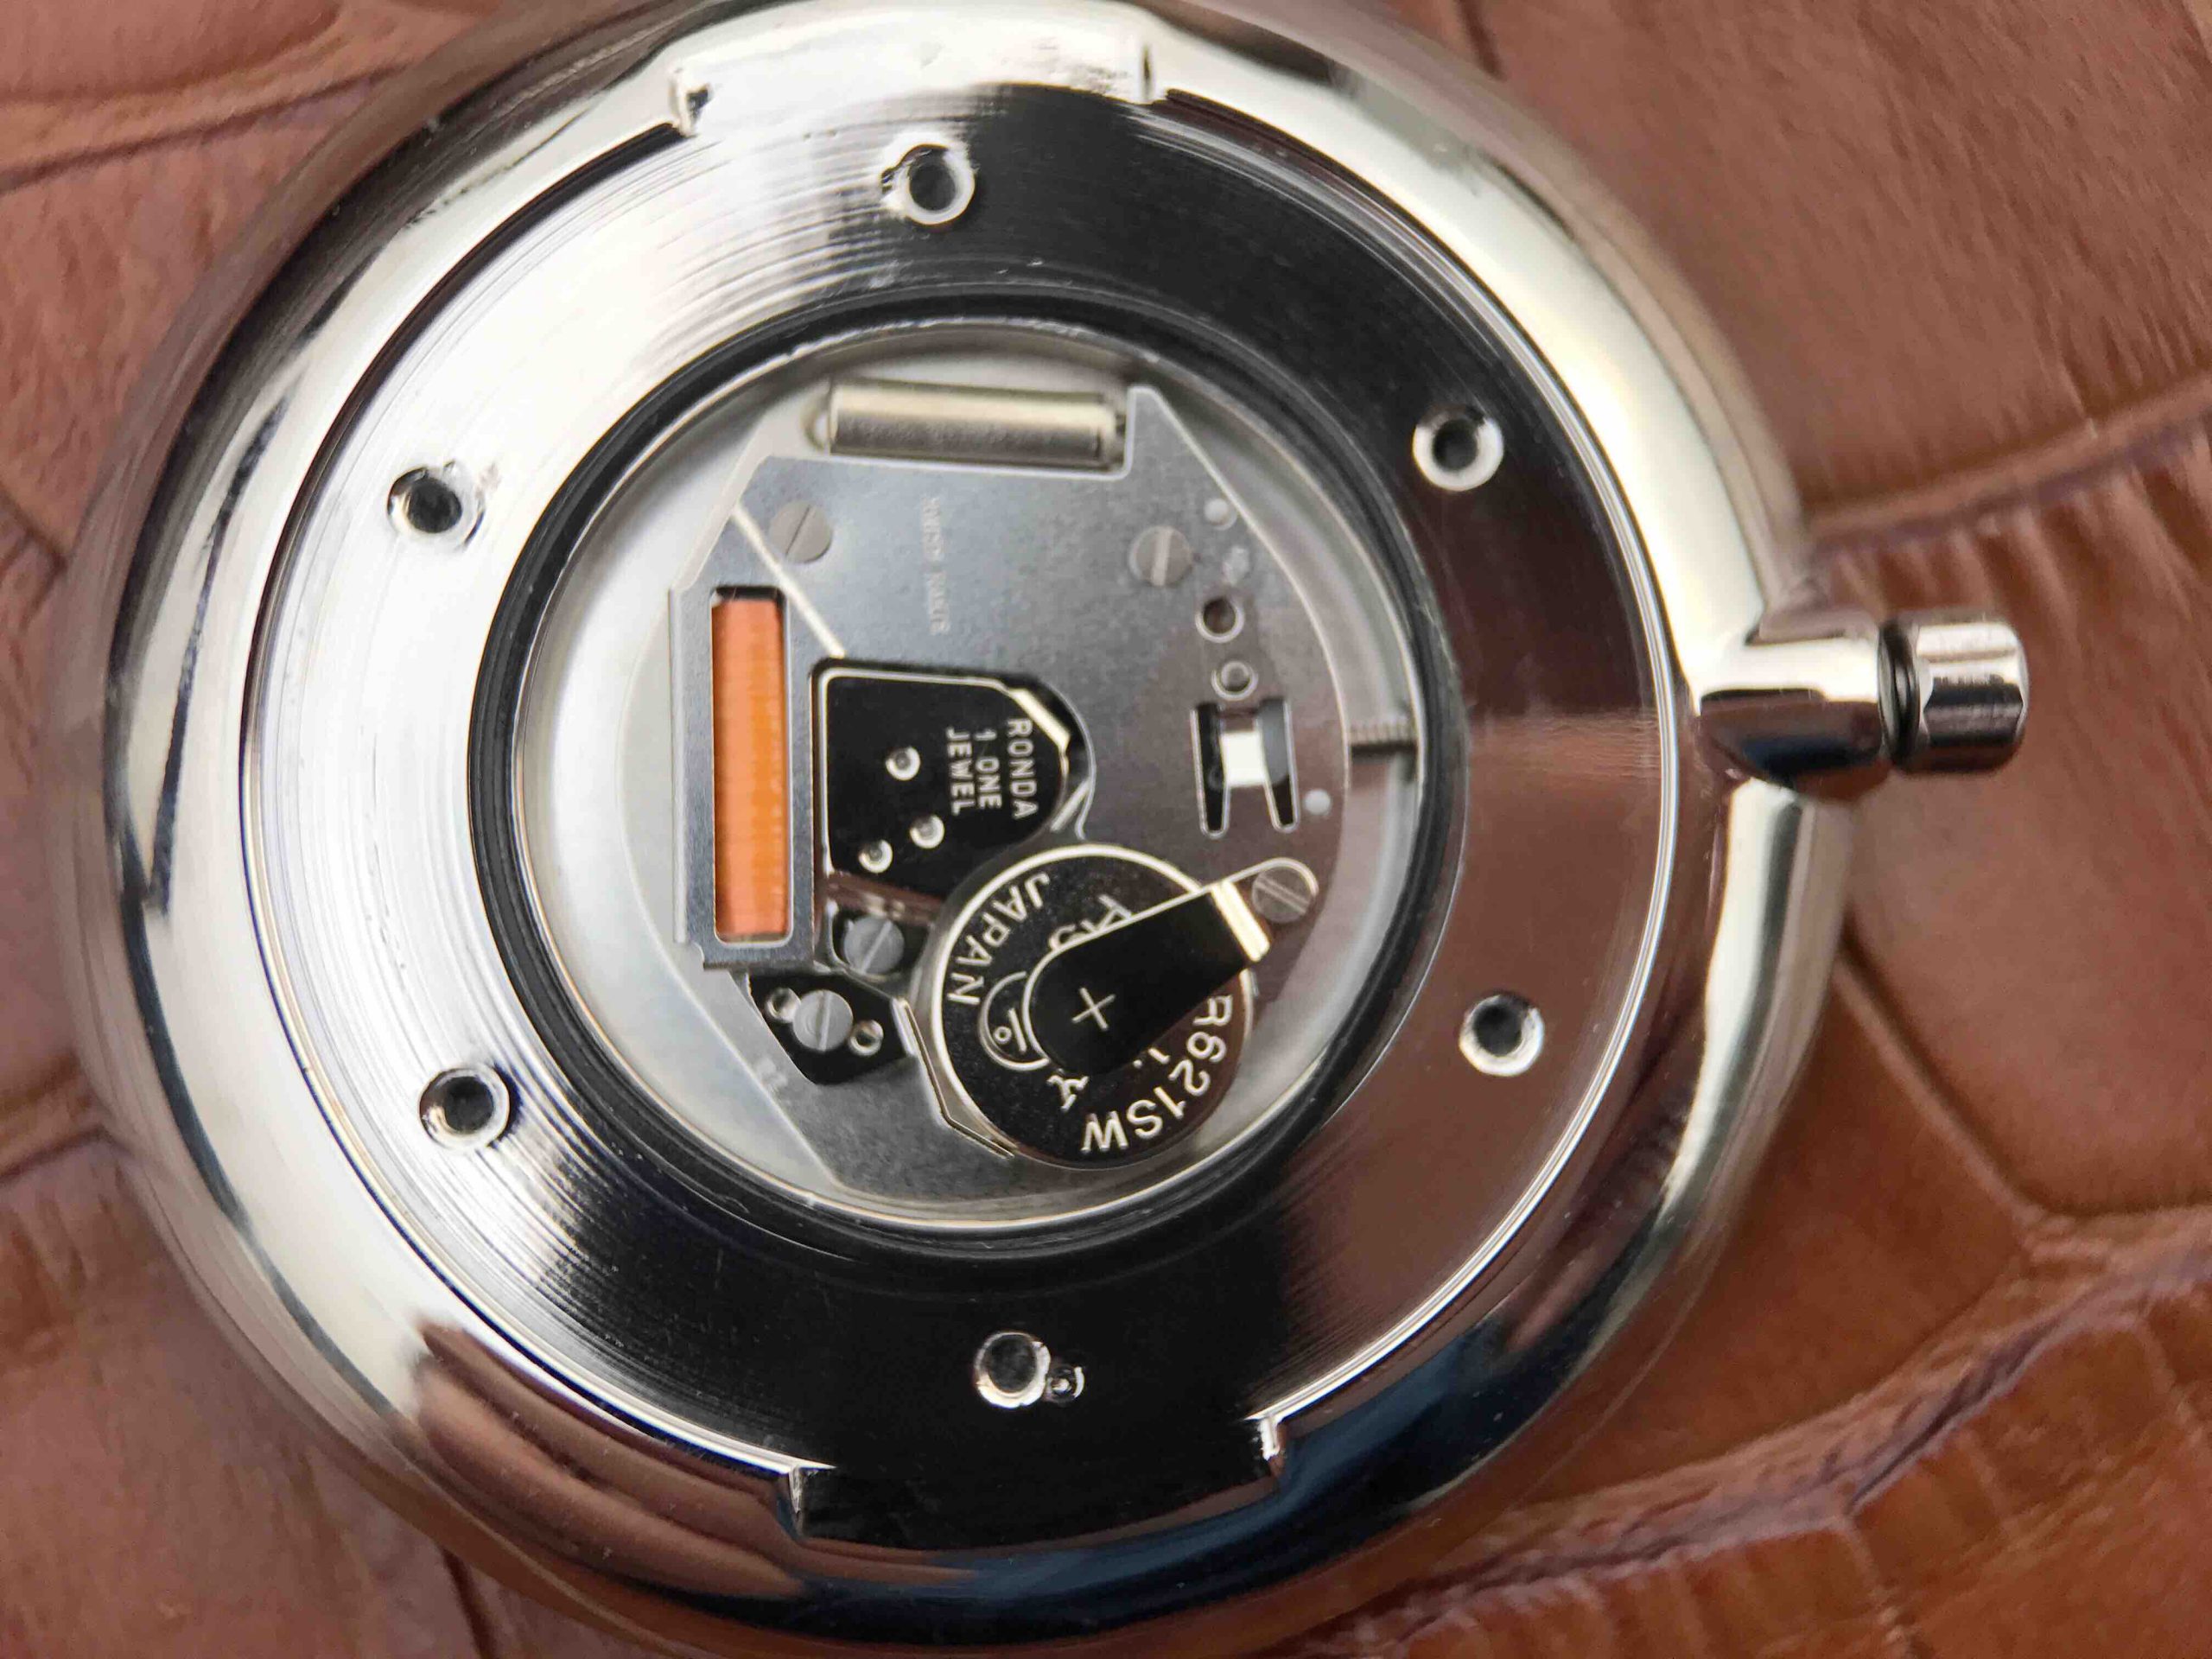 2023012615062736 scaled - 浪琴嘉嵐復刻手錶手錶價格 JF廠浪琴嘉嵐繫列L4.209.4.58.6 石英女士腕錶￥2080